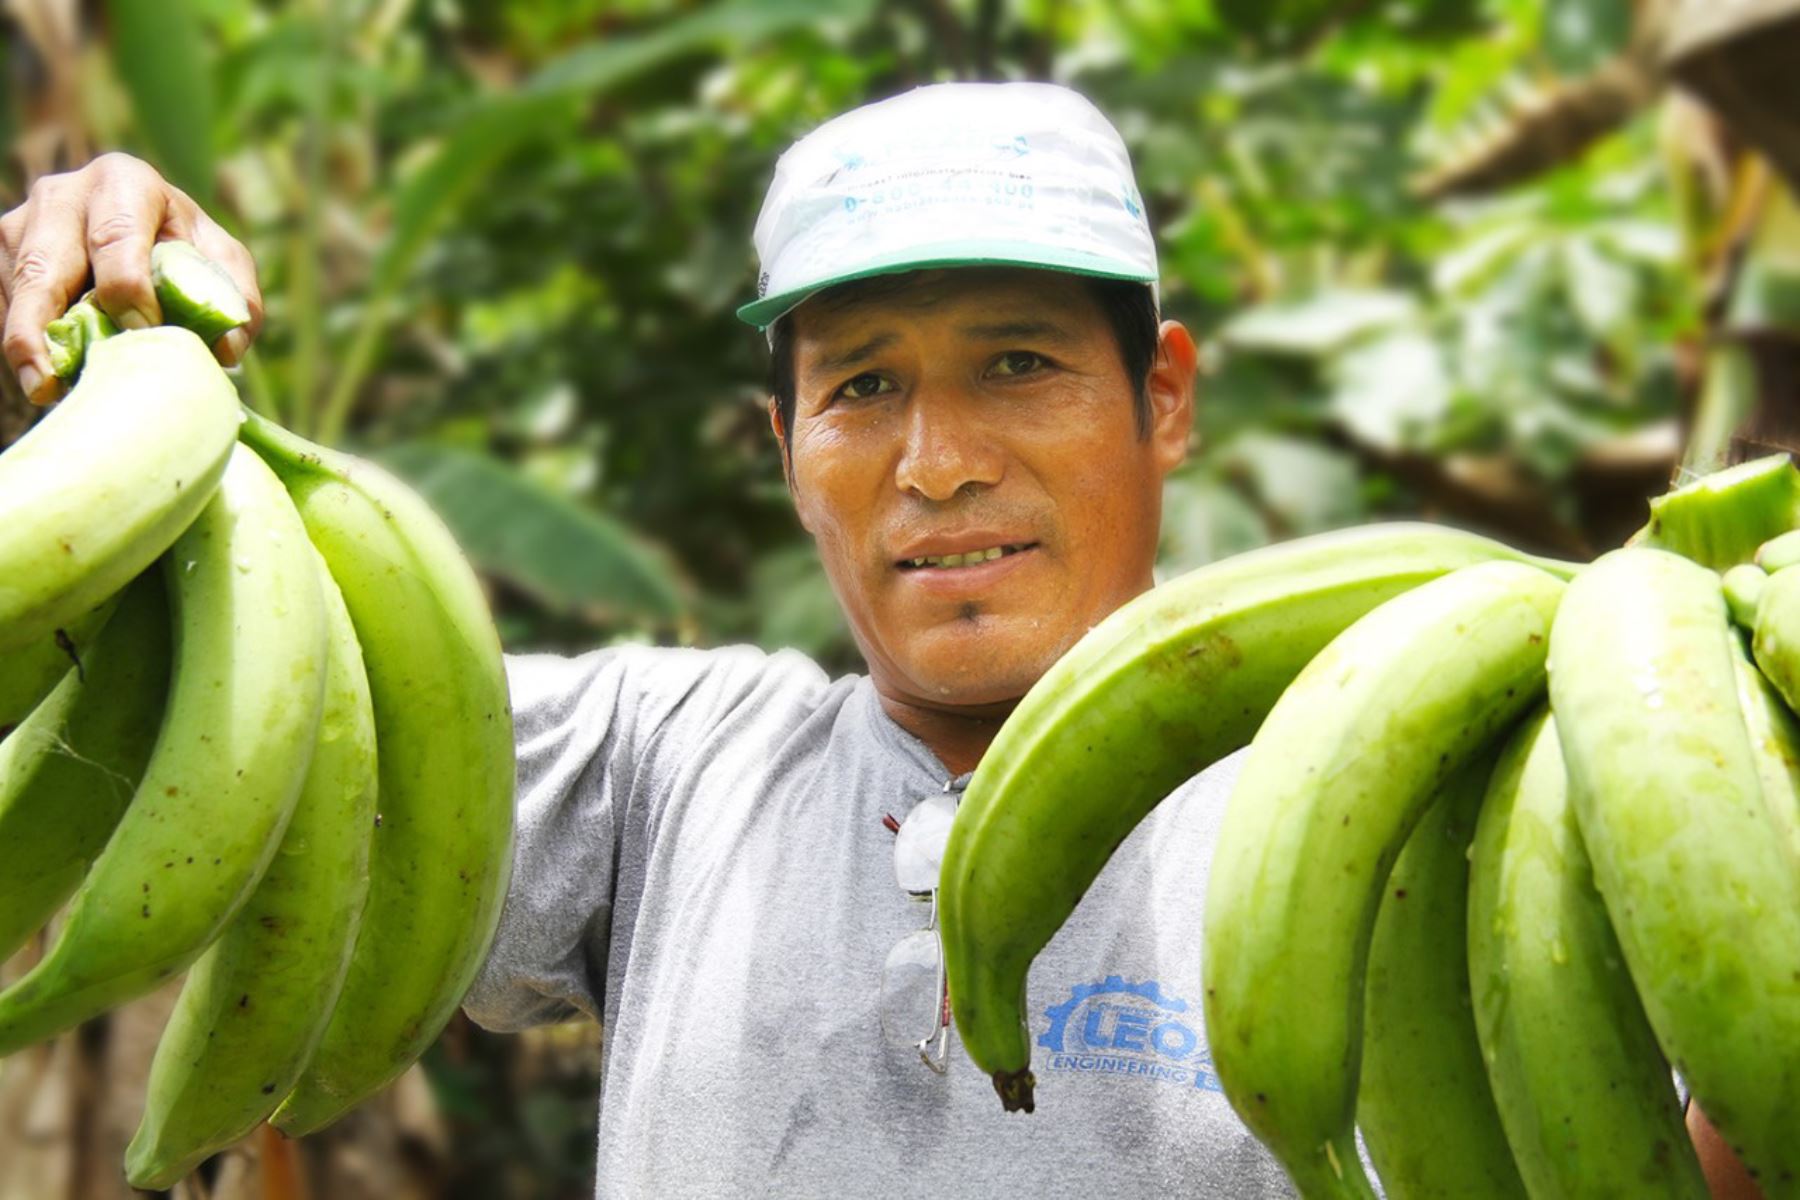 El Ministerio de Agricultura y Riego (Minagri) logró el incremento en 25% de la cosecha de plátano y sus variedades, gracias a la promoción del uso de guano de isla entre los productores de la localidad de Mala, en la provincia de Cañete, informó Agro Rural. ANDINA/Difusión